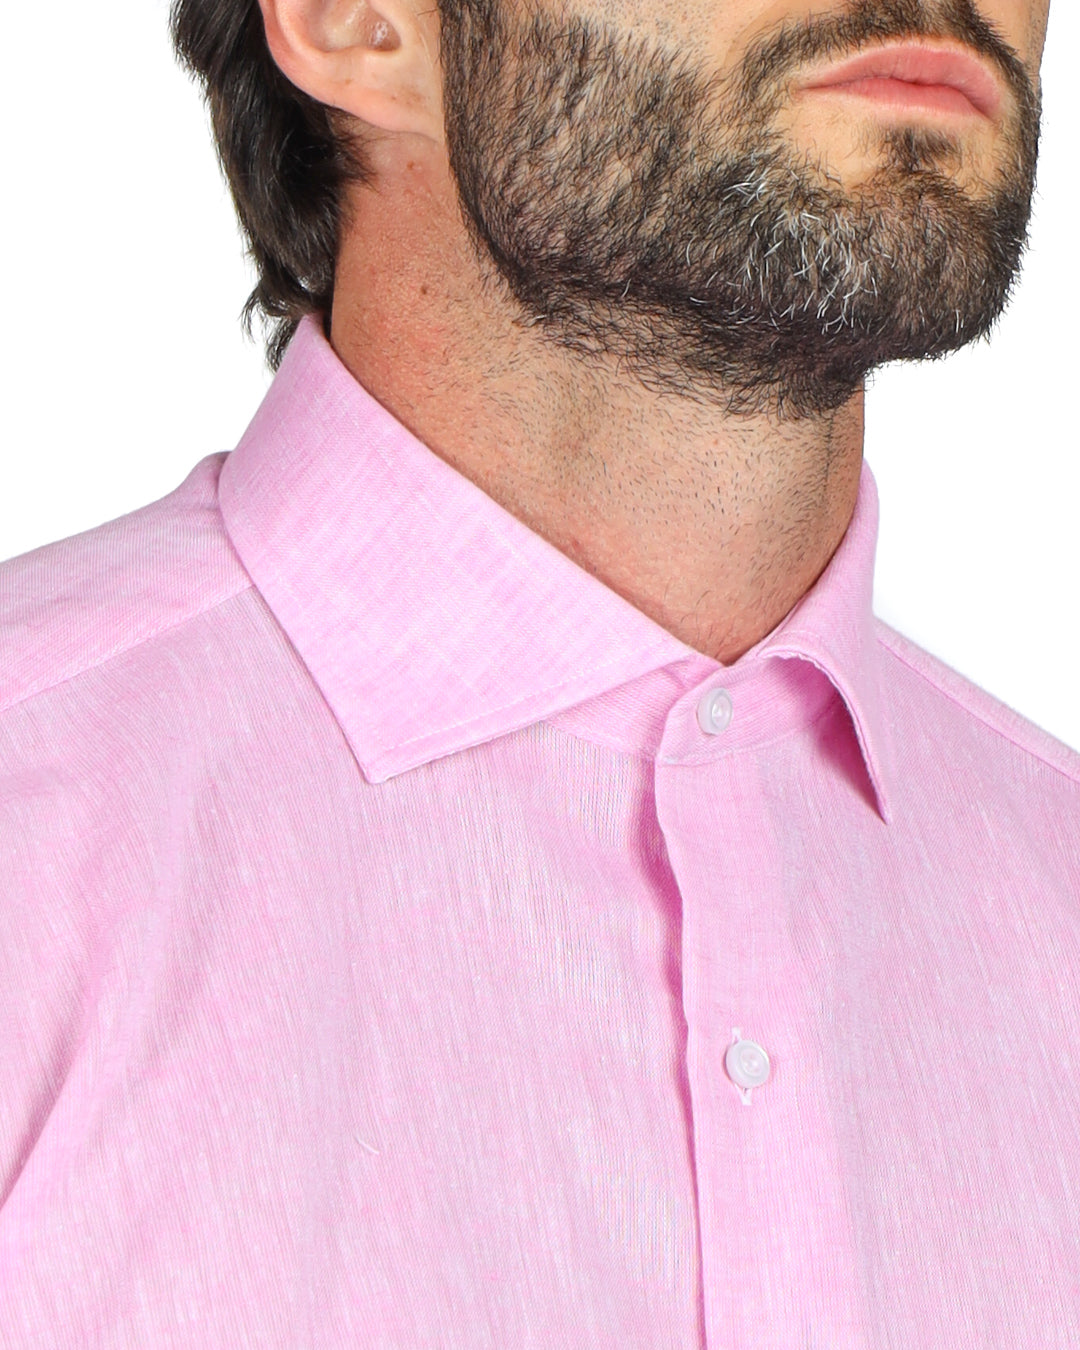 Praiano - Camicia classica rosa in lino